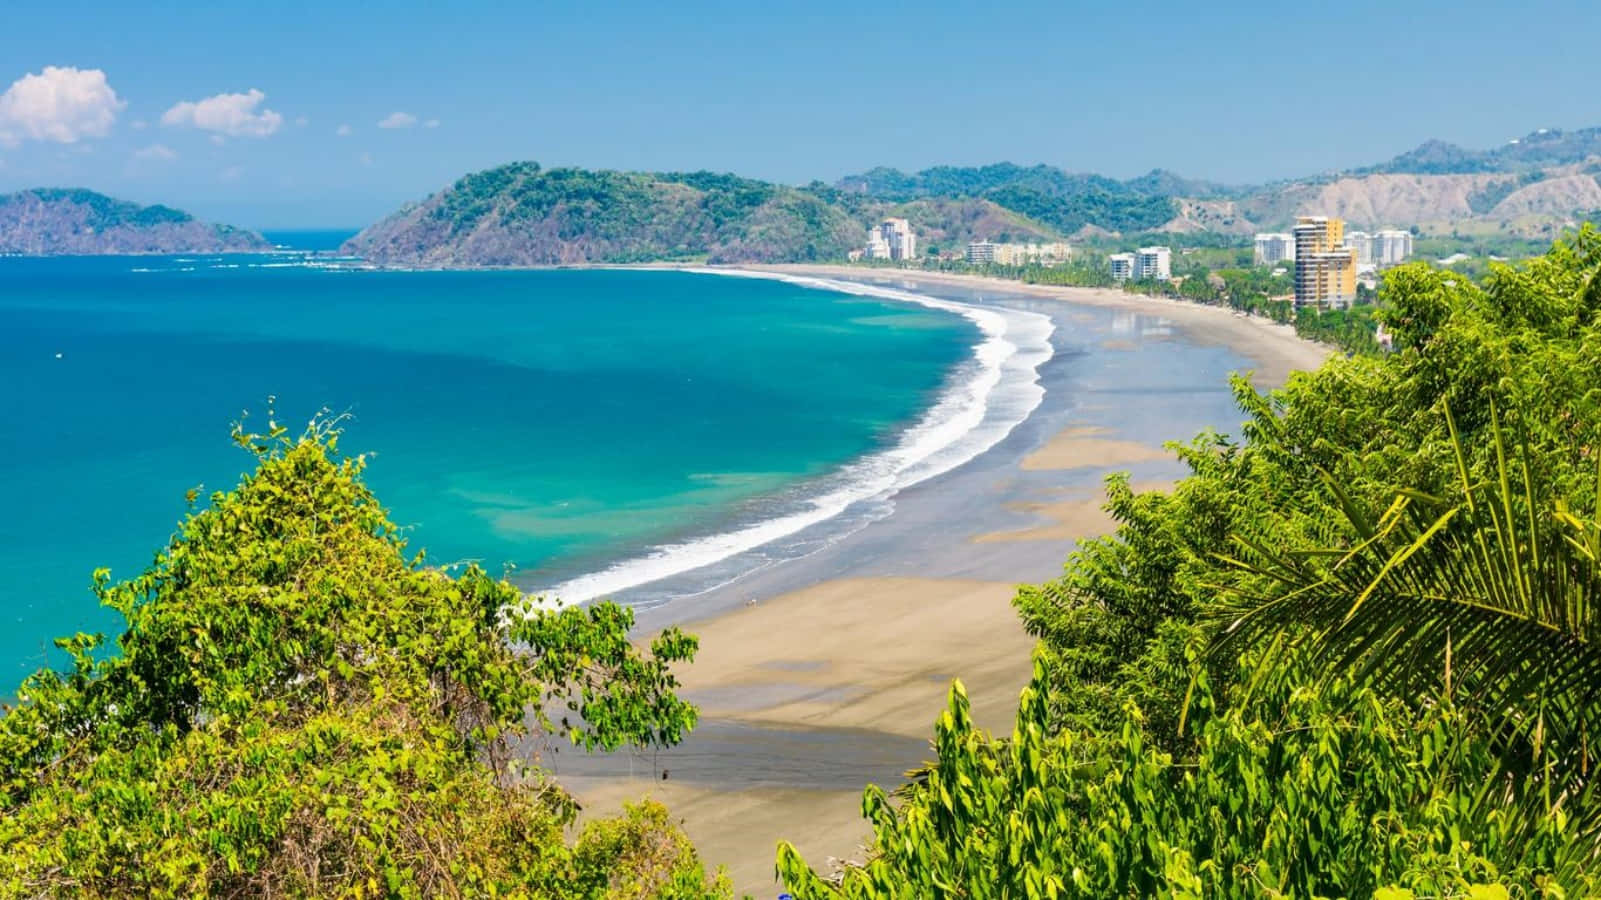 Genießensie Einen Urlaub Im Paradies Im Wunderschönen Costa Rica.